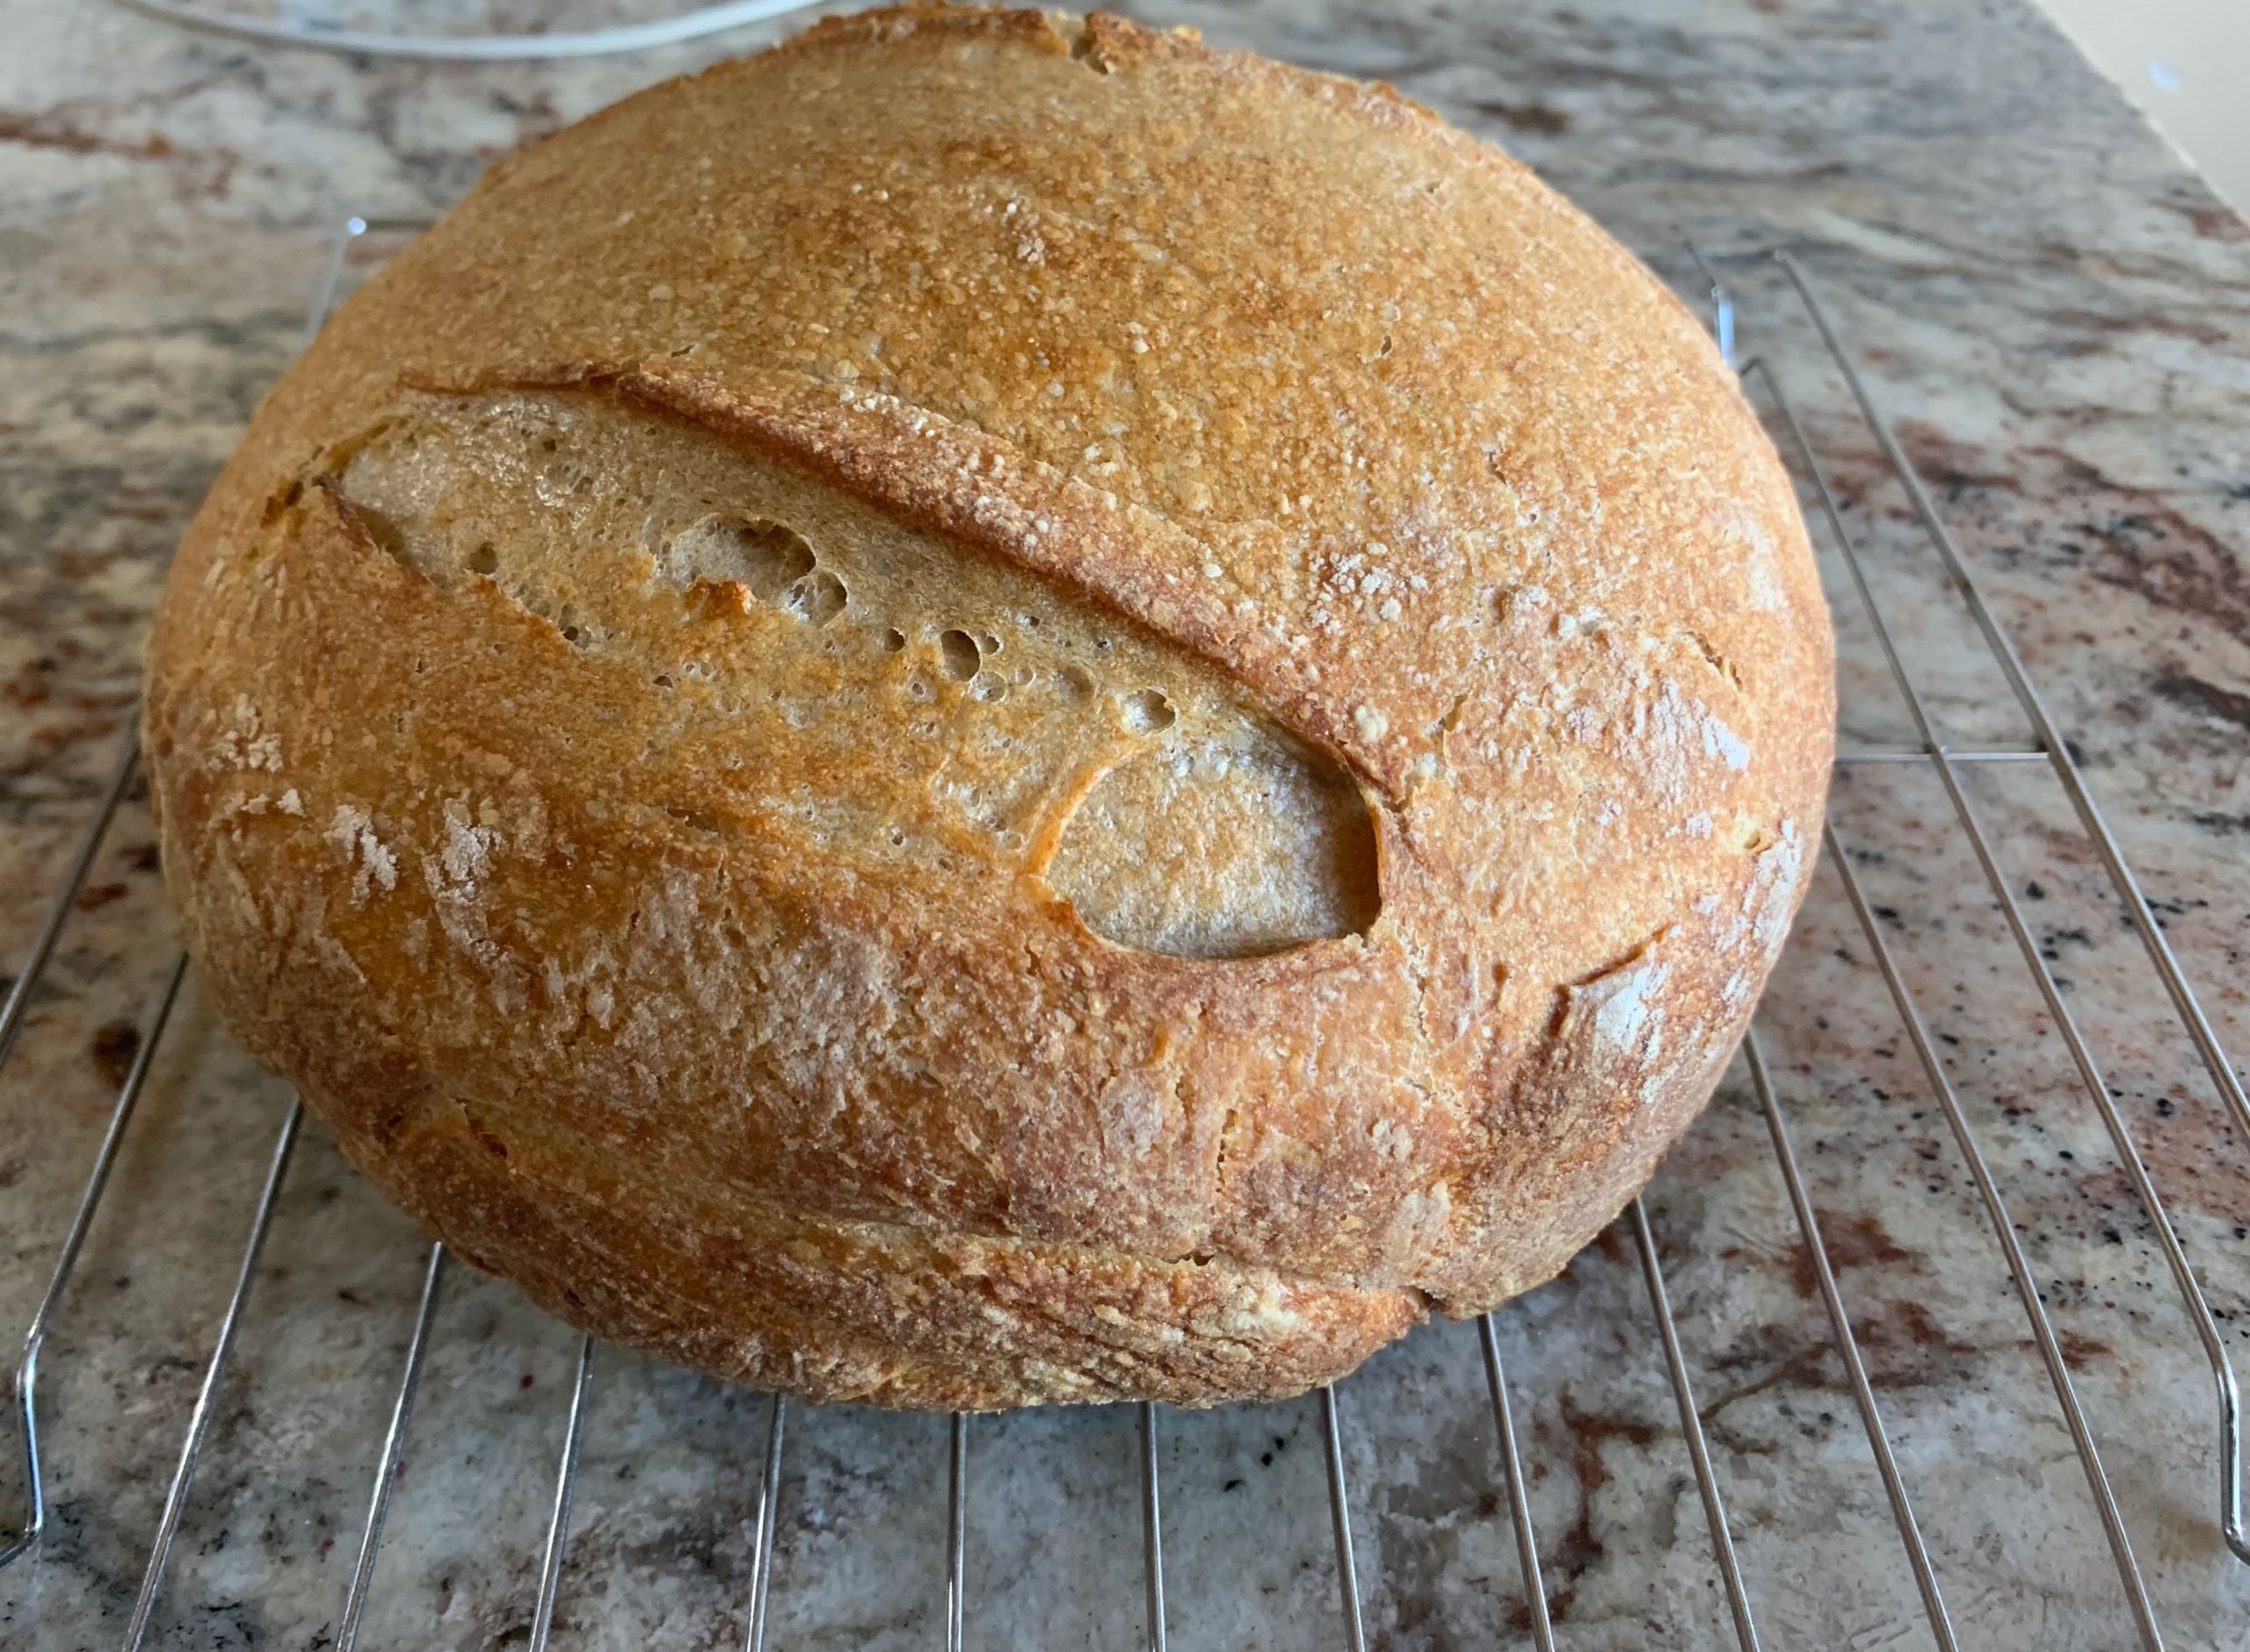 Making Homemade Bread - photo of sourdough "cabin" bread